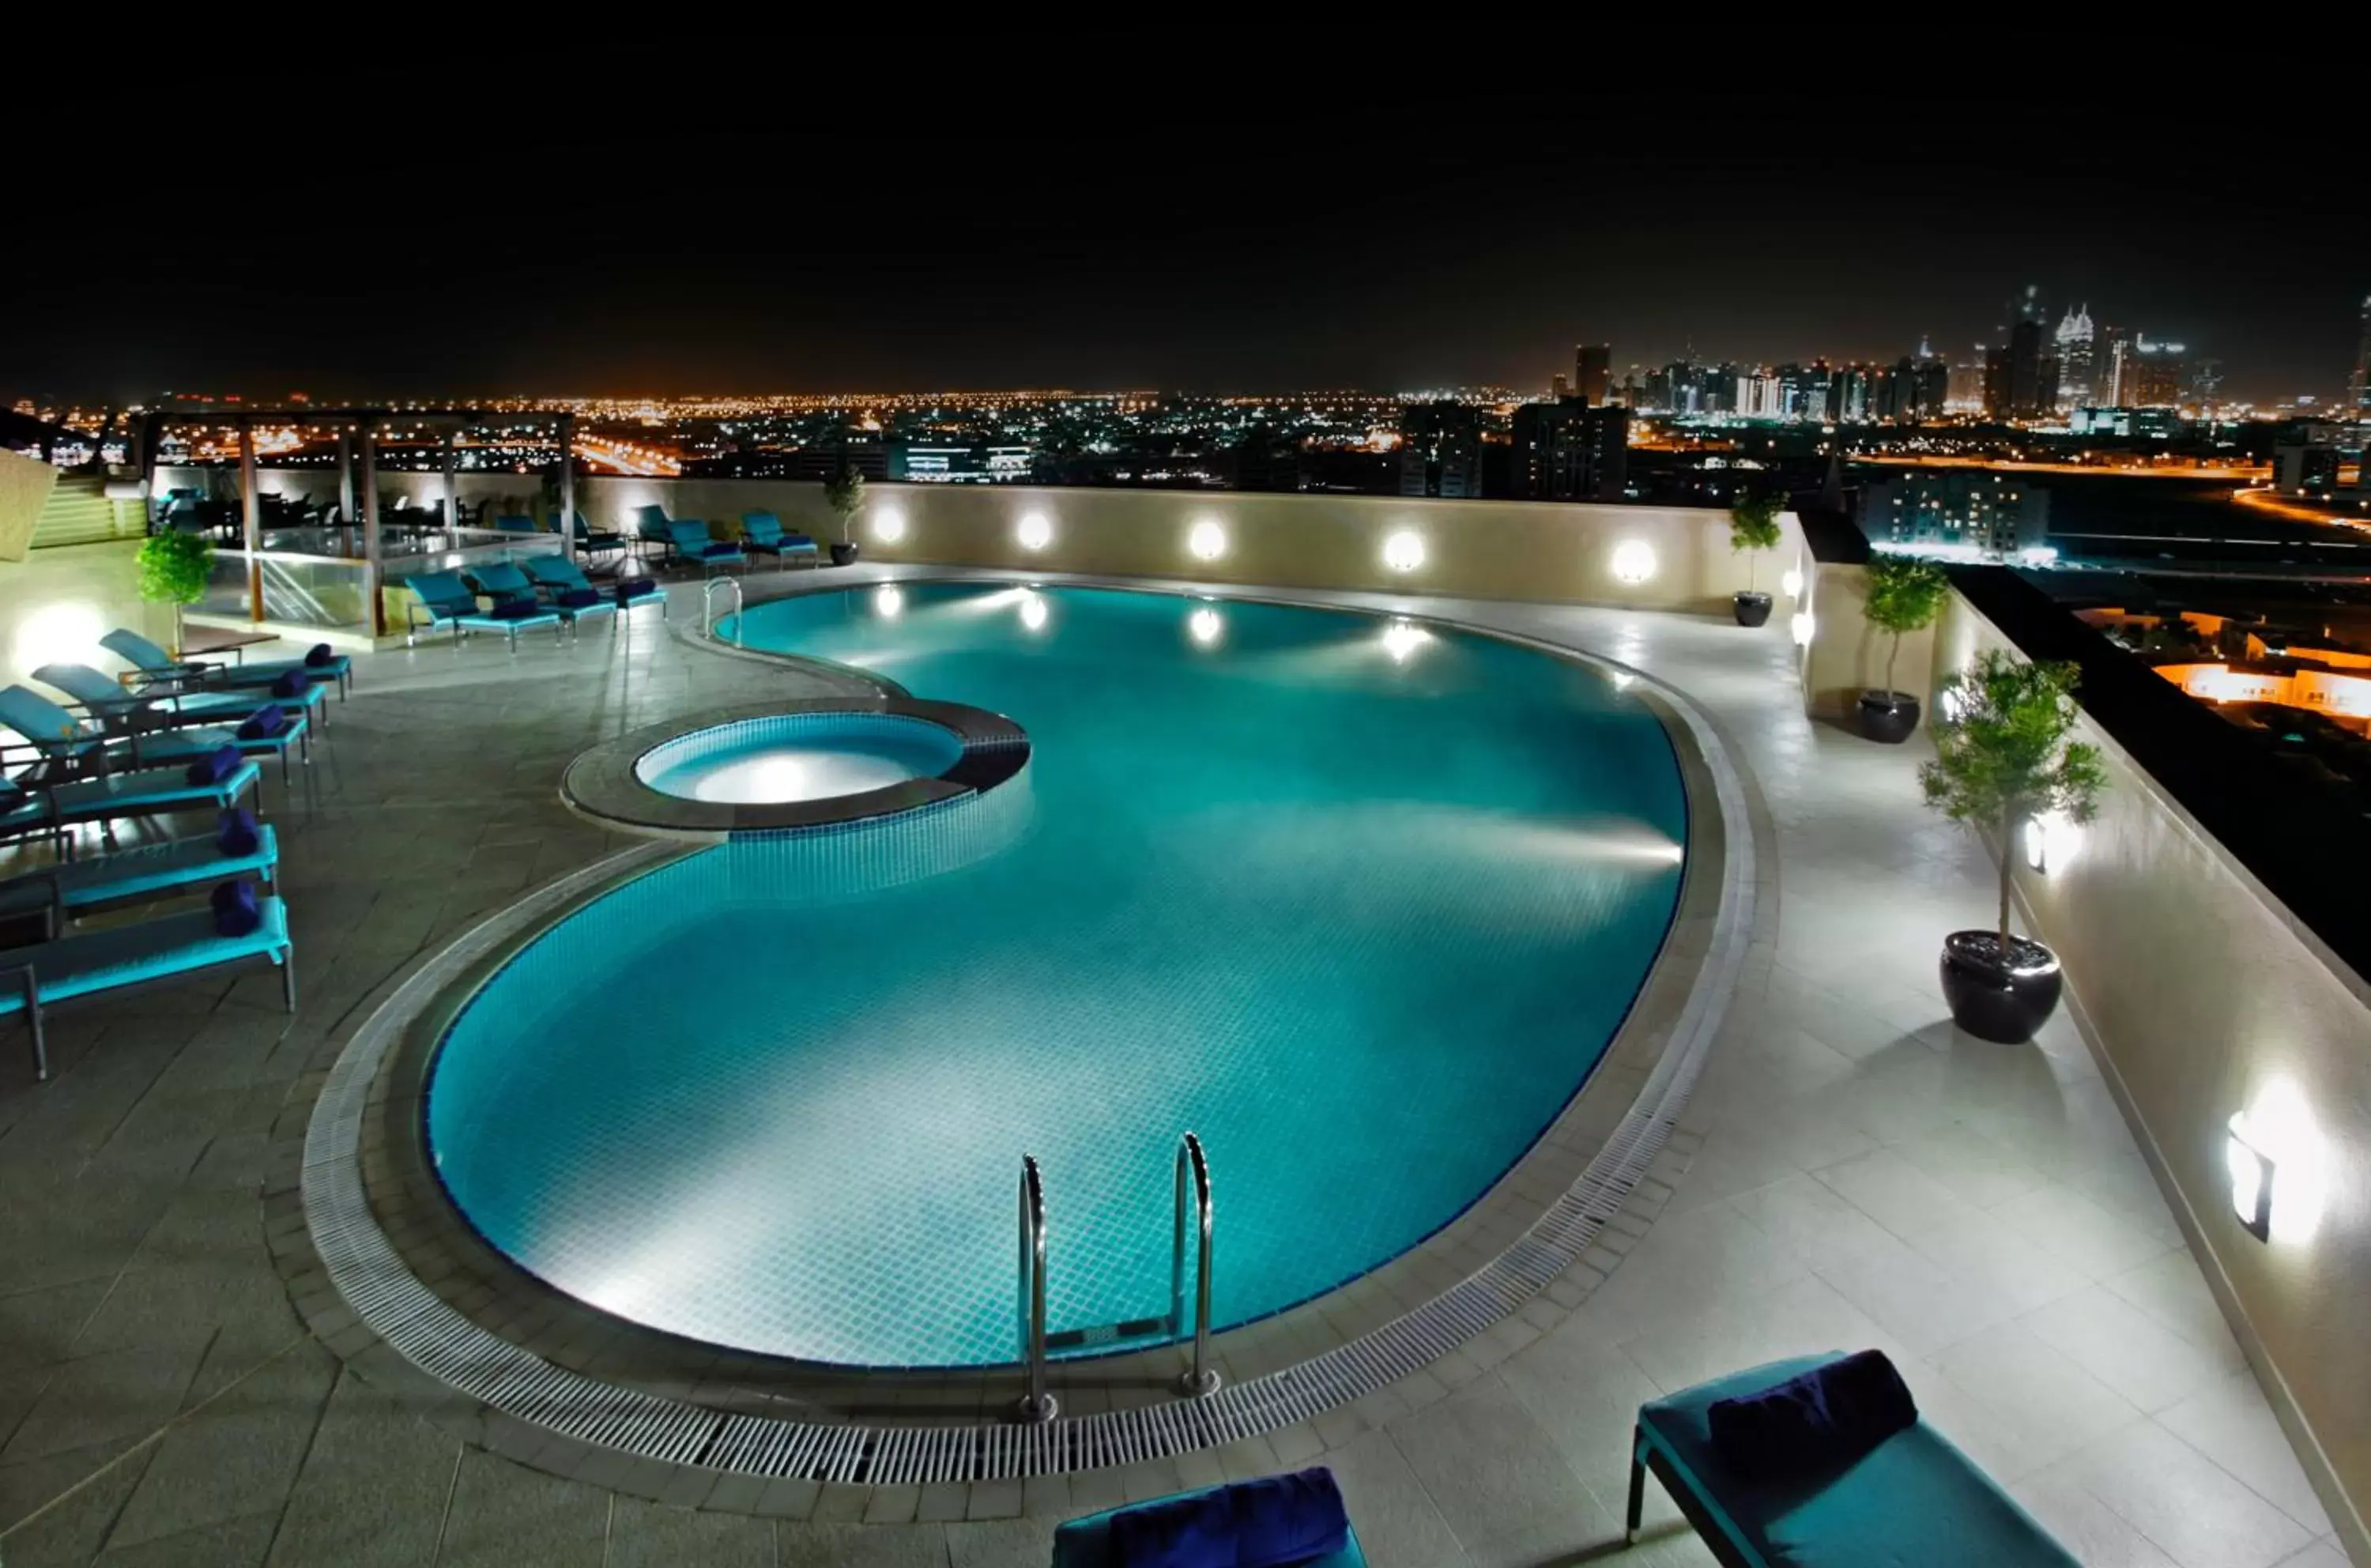 Night, Pool View in Elite Byblos Hotel